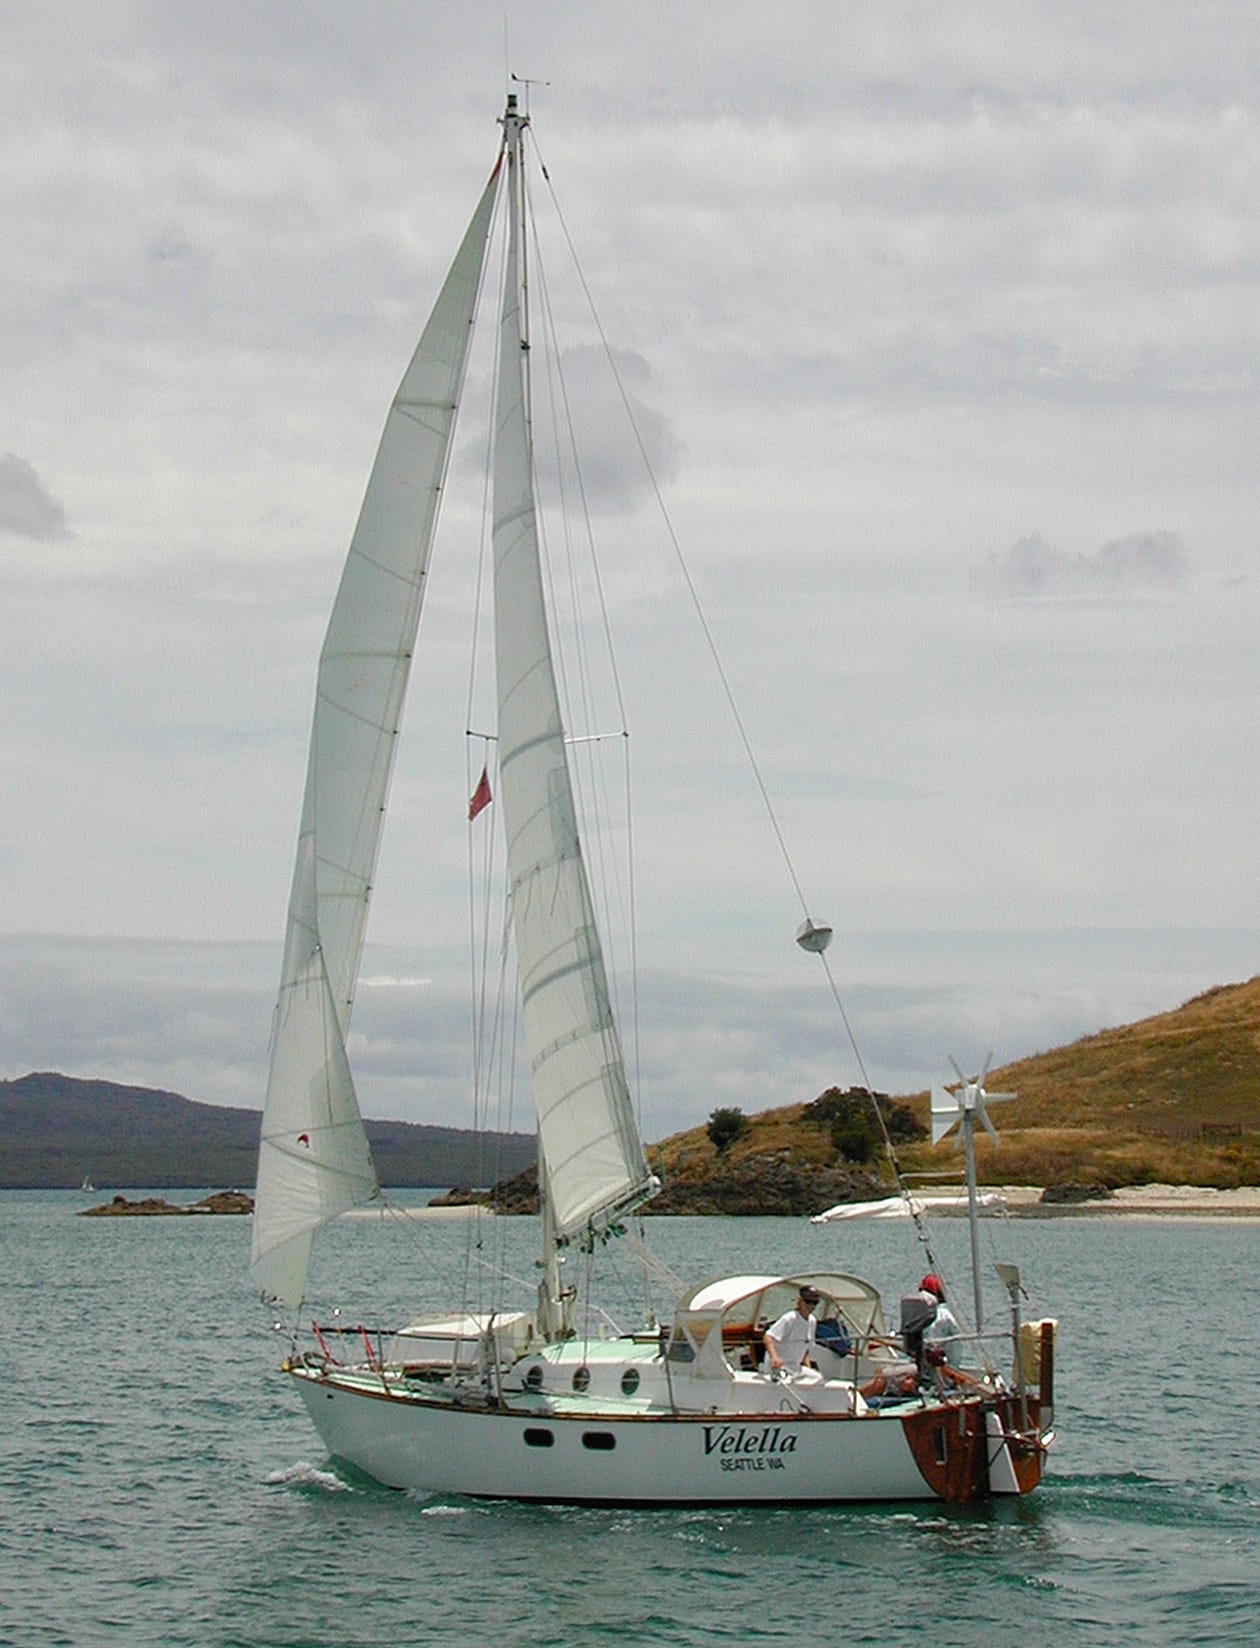 a sailboat at sail.